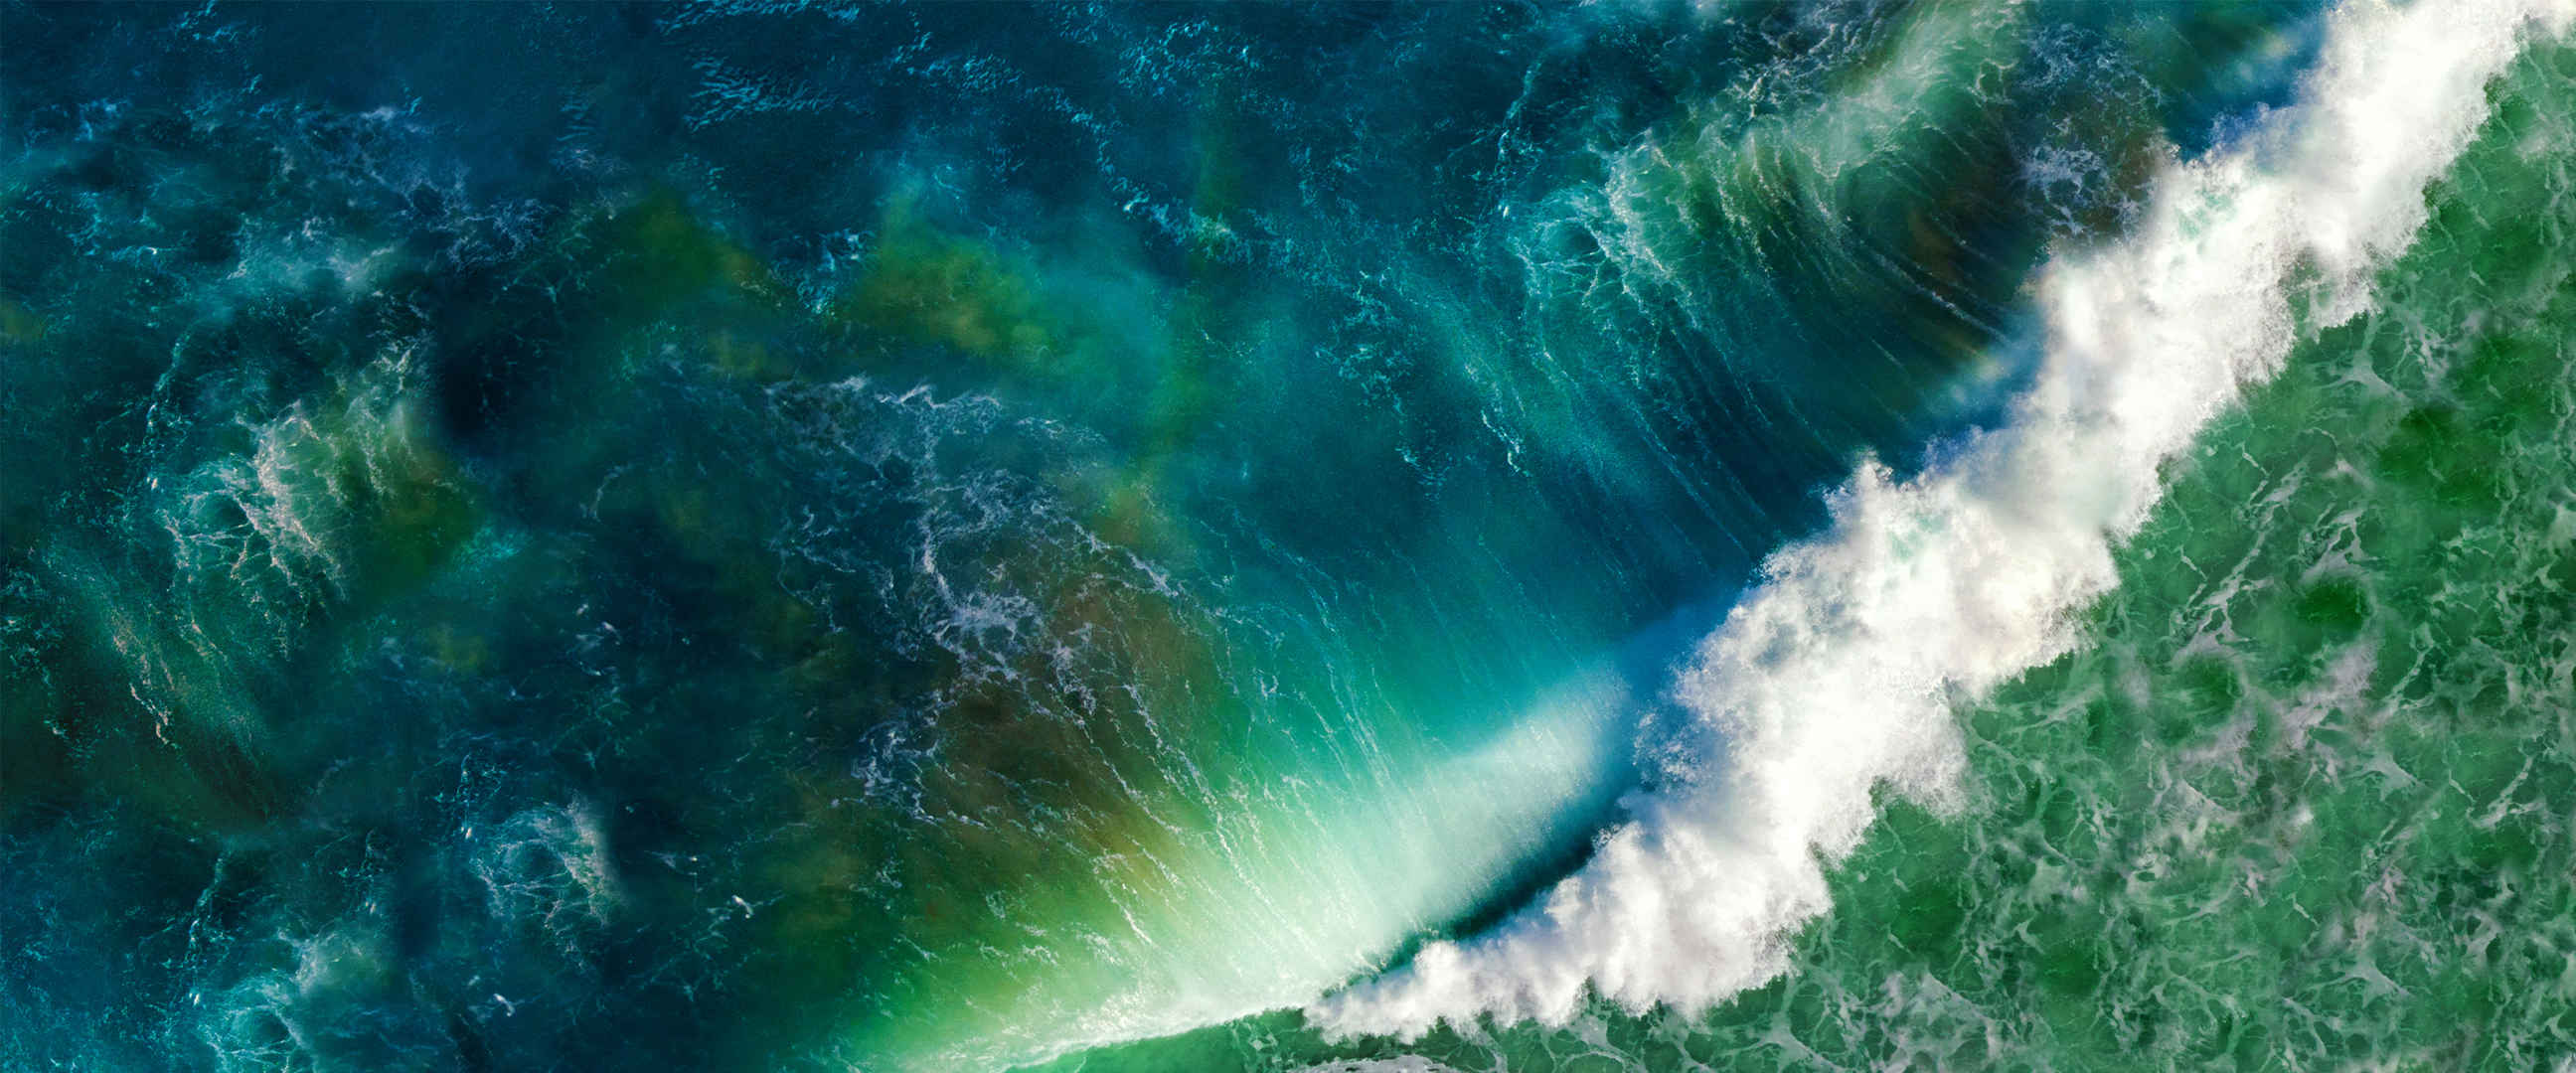 绿色波涛汹涌海浪壁纸图片